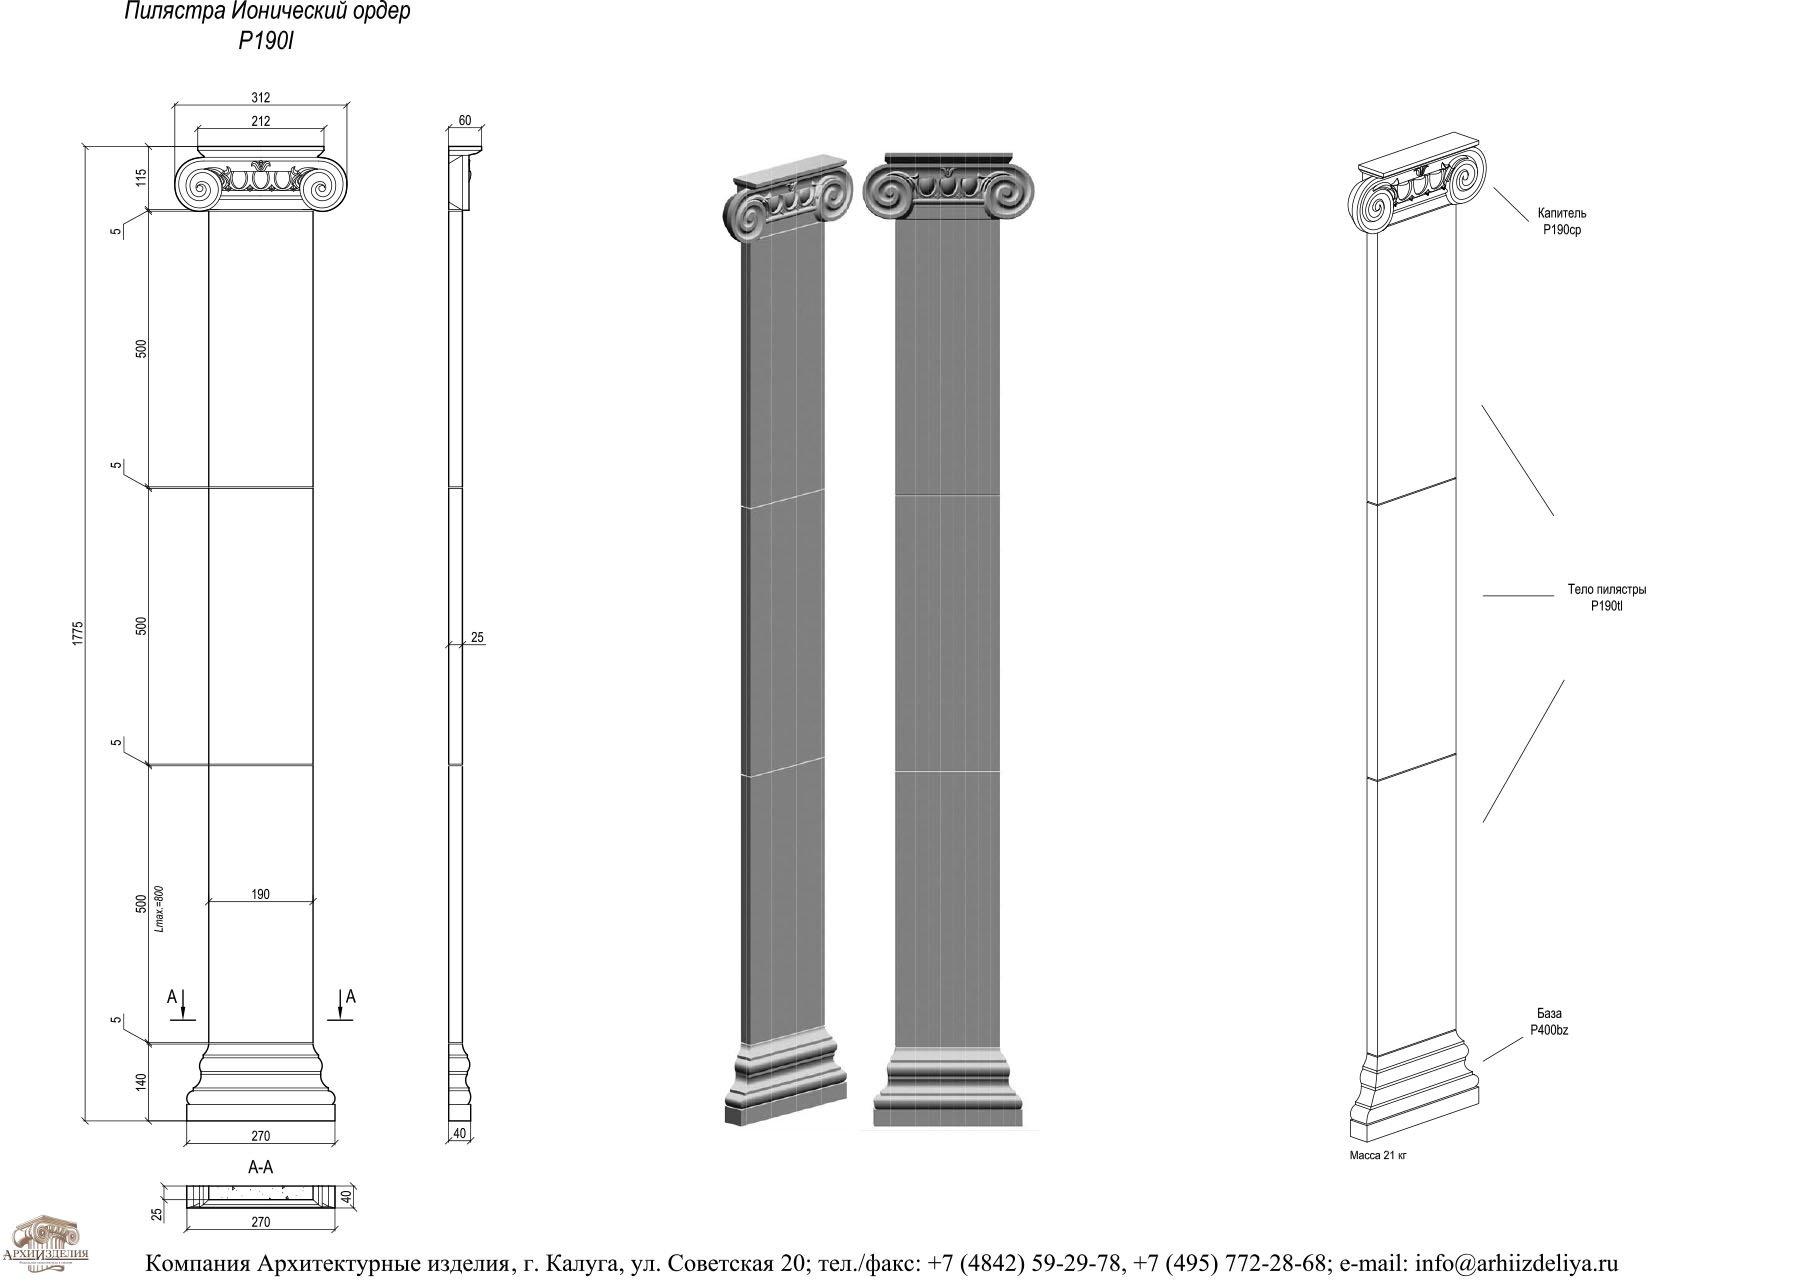 Вертикальный выступ стены. Пилястра ионический ордер. Колонна Ионического ордера. Пилястры Ионического ордера. Желобчатые колонны NW 250мм.